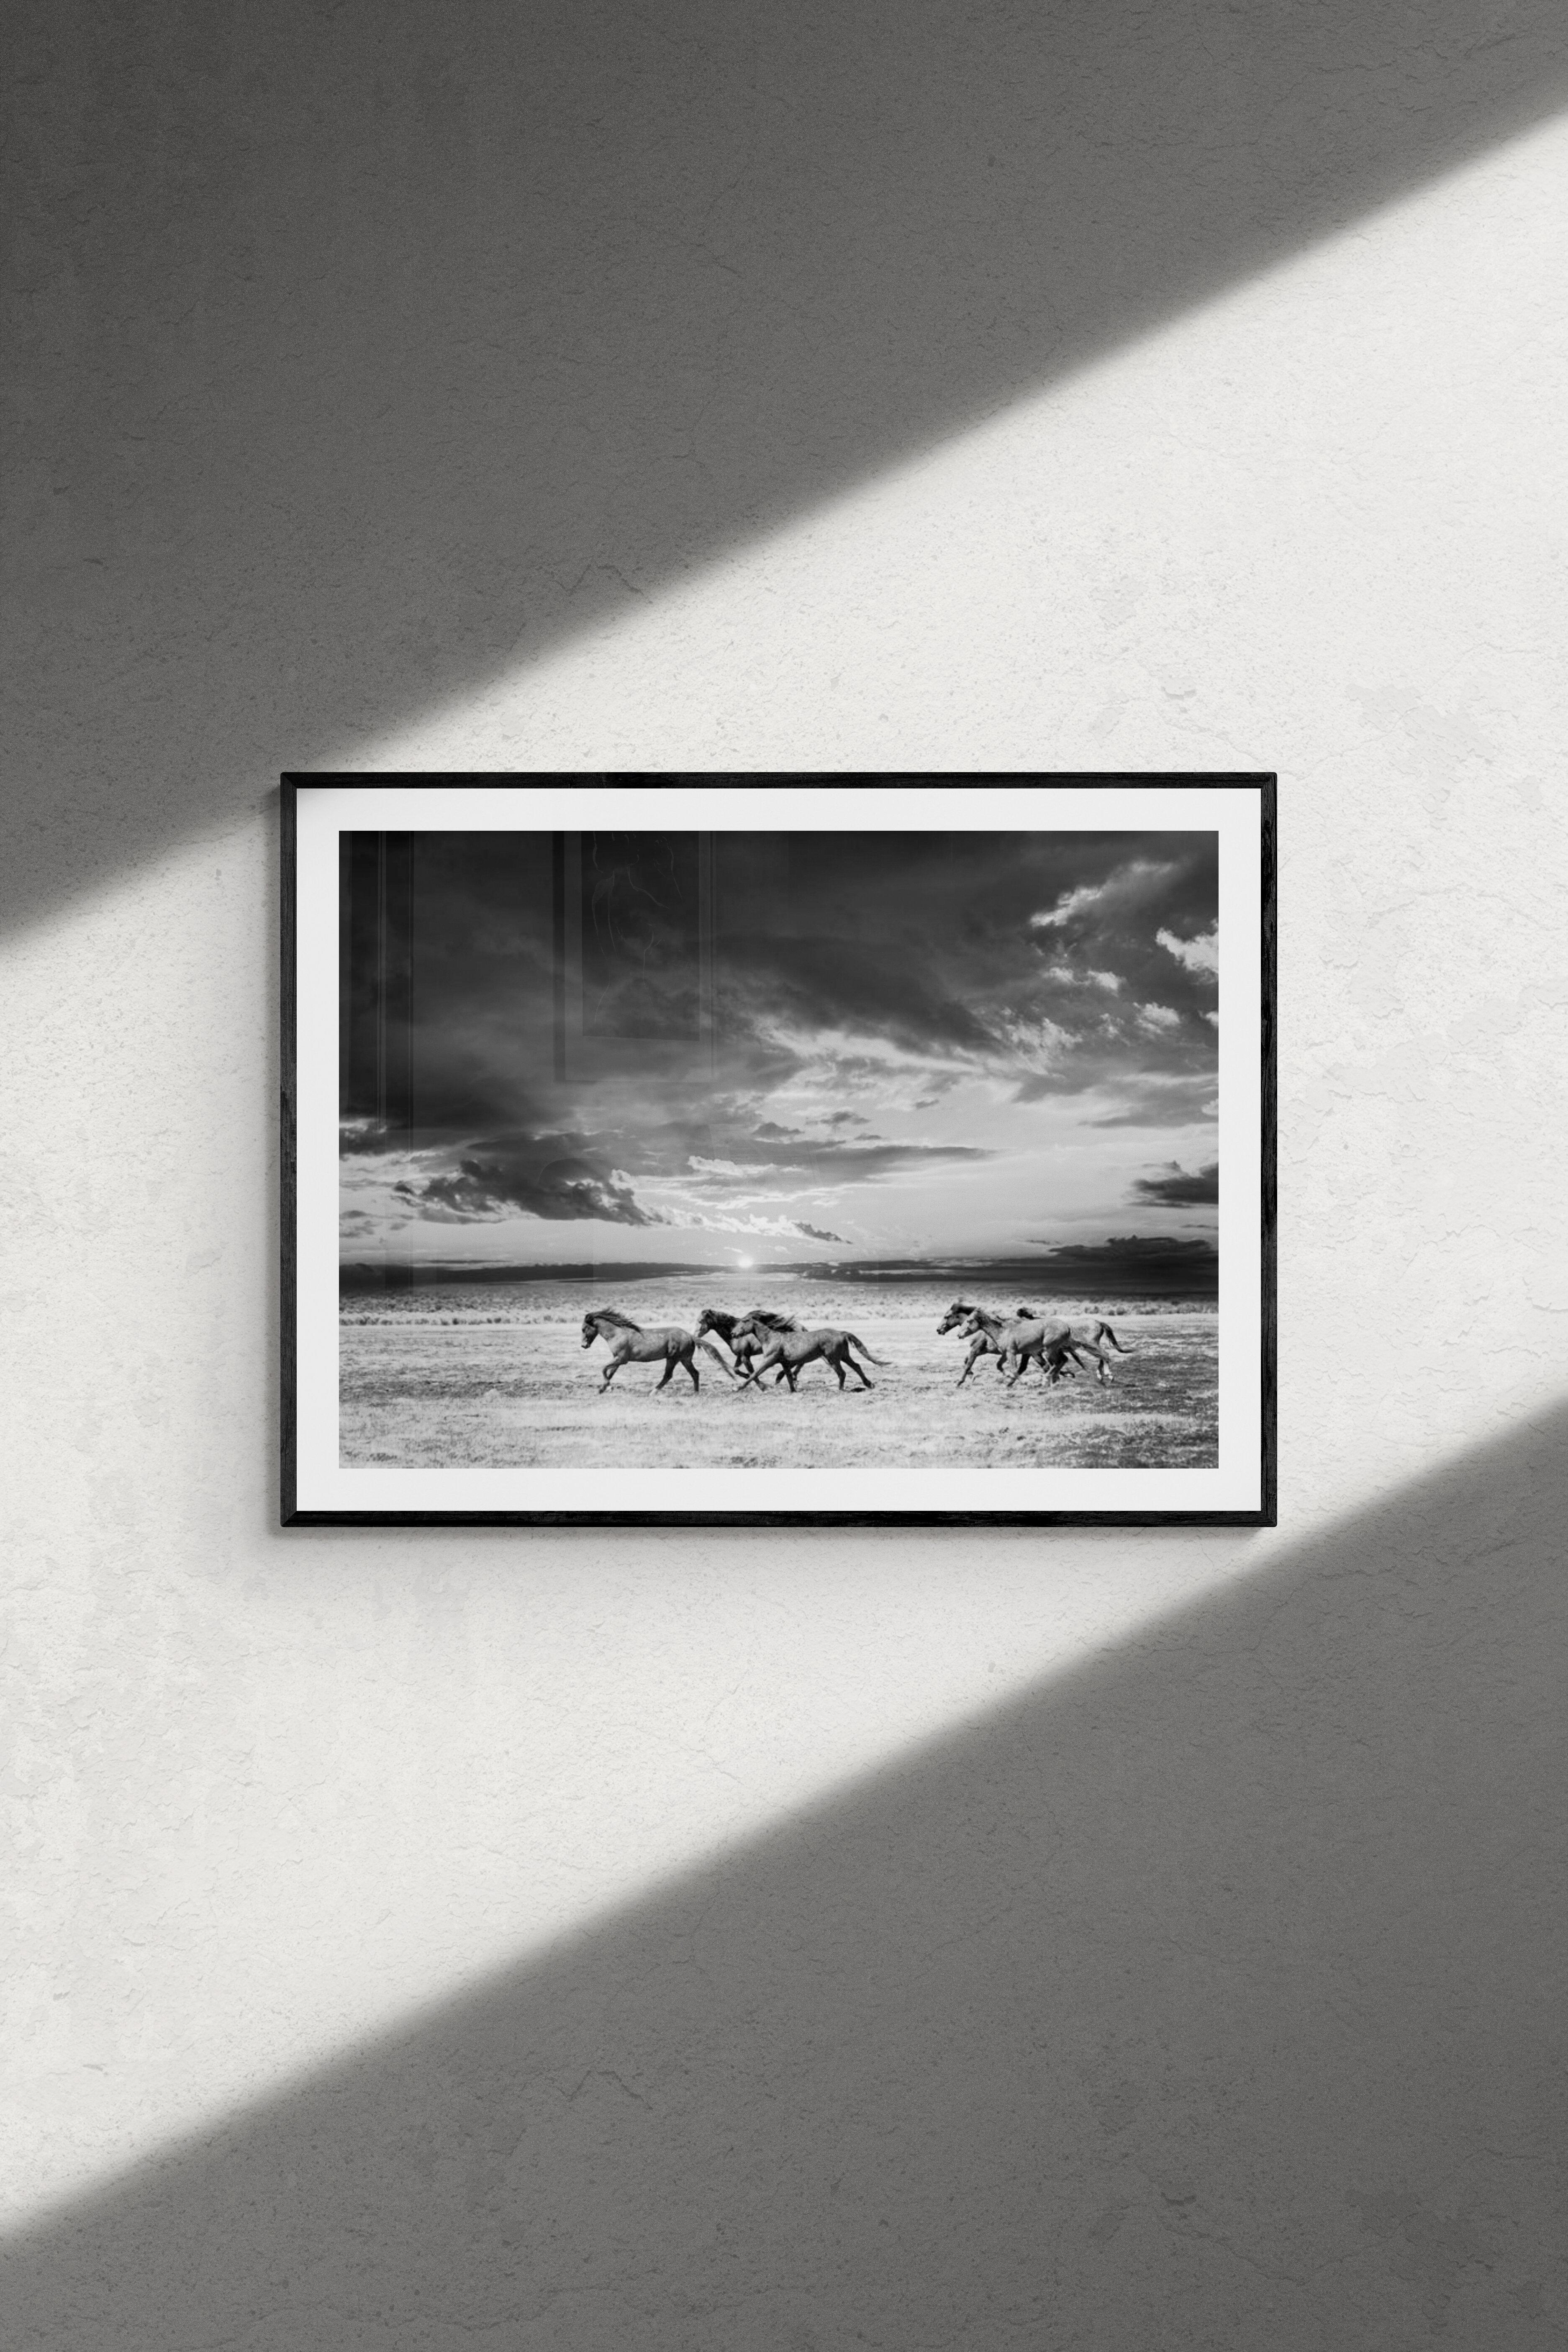 Chasing the Light- 60x40 Schwarz-Weiß-Fotografie mit Wildpferden, Senf, unsigniert – Photograph von Shane Russeck